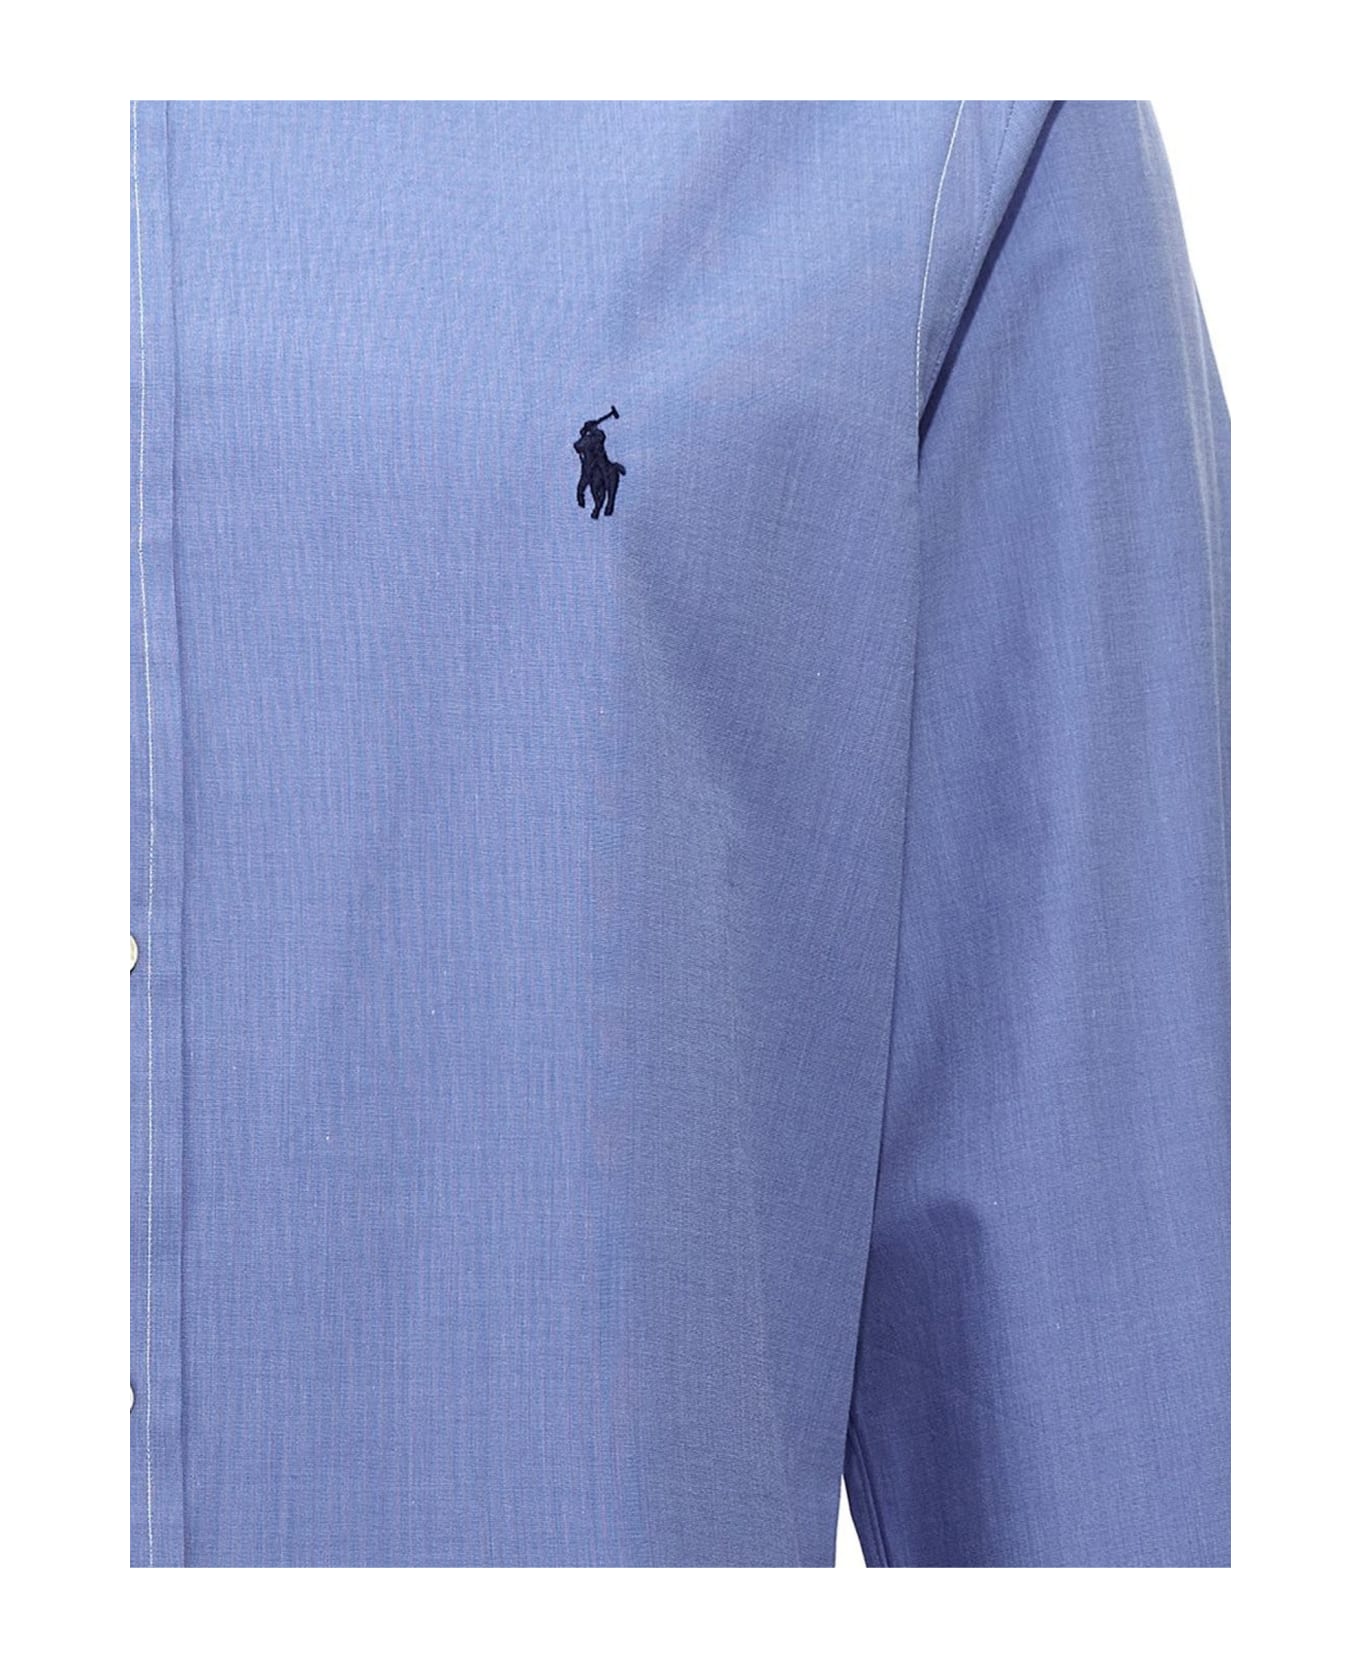 Ralph Lauren Light Blue Stretch-cotton Shirt - Blue